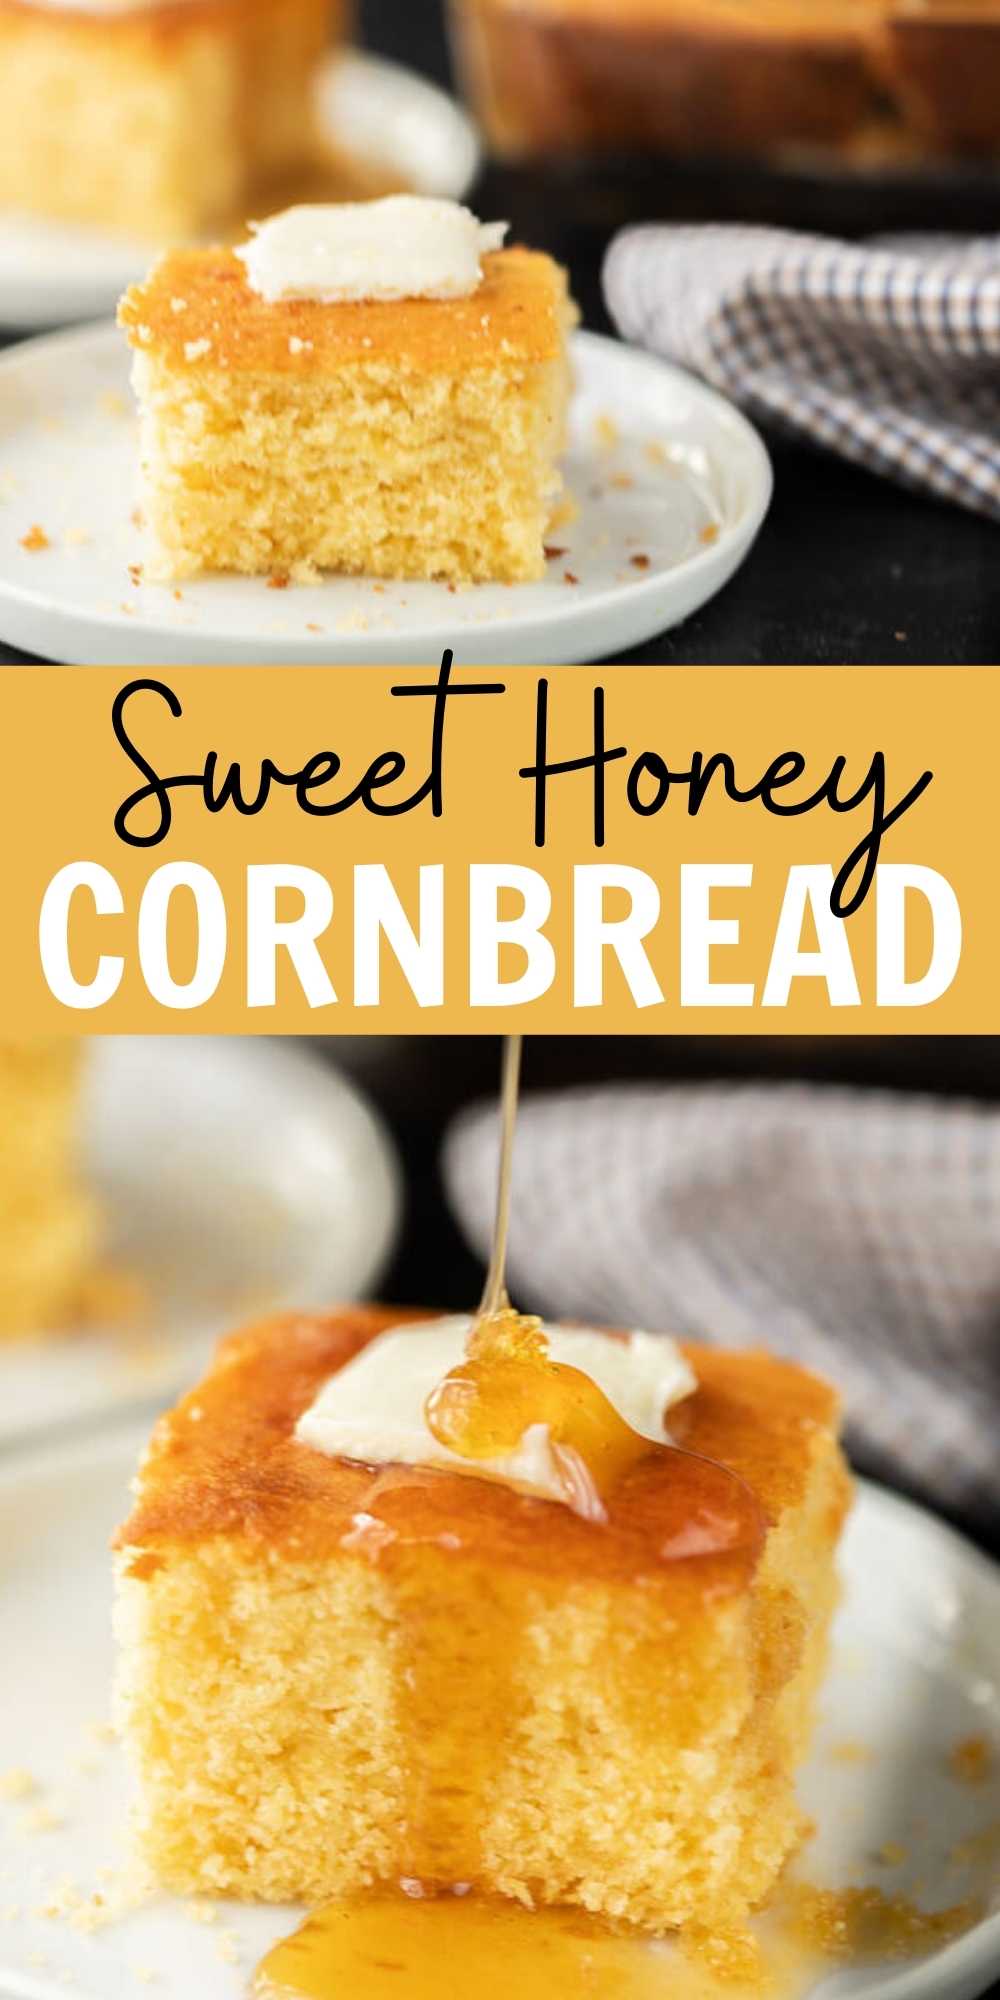 https://www.eatingonadime.com/wp-content/uploads/2021/06/Sweet-Honey-Cornbread-Pin-3.jpg